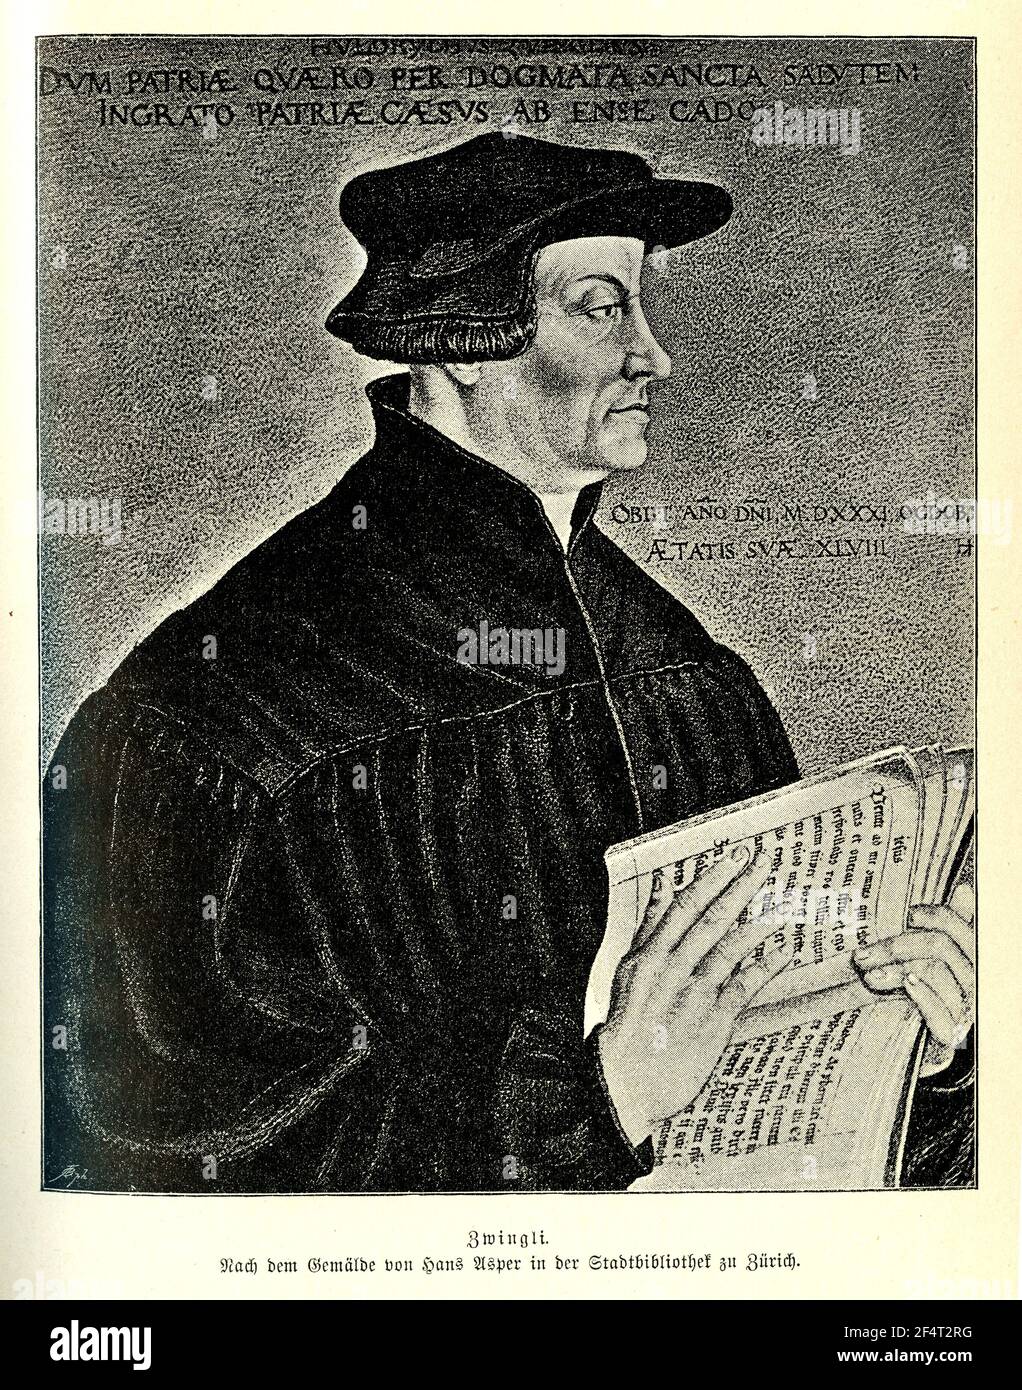 Ritratto di Huldrych Zwingli (1484 - 1531) riformatore e umanista svizzero, influenzato dagli scritti di Erasmus di Rotterdam Foto Stock